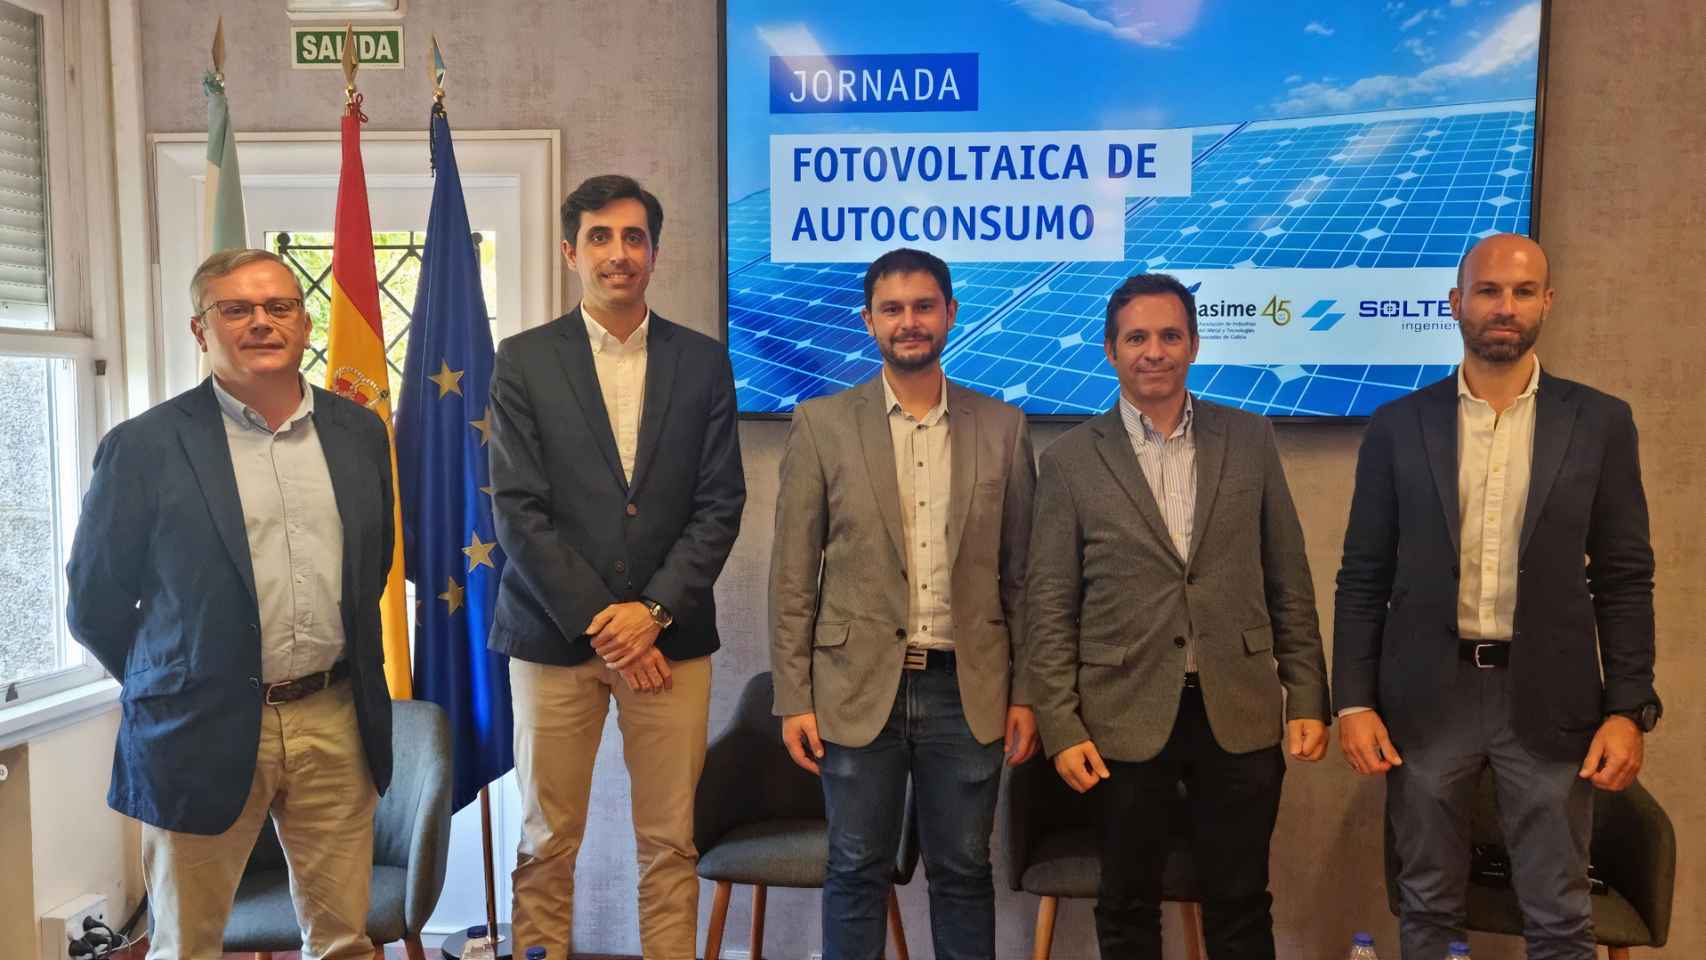 El autoconsumo fotovoltaico podría bajar un 60% el coste energético de la industria gallega